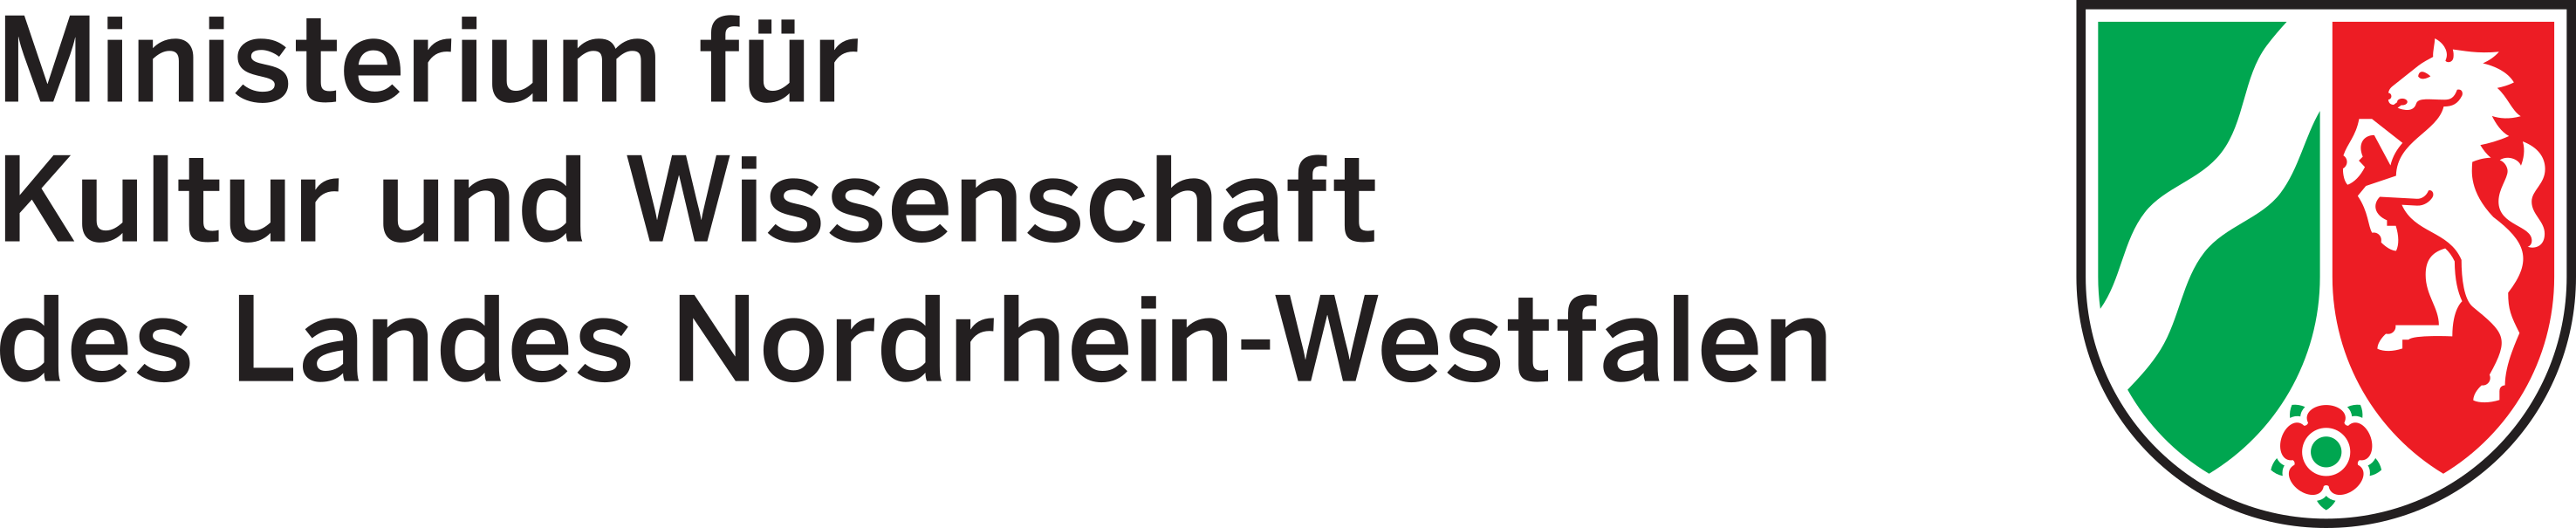 Logo MKW_NRW